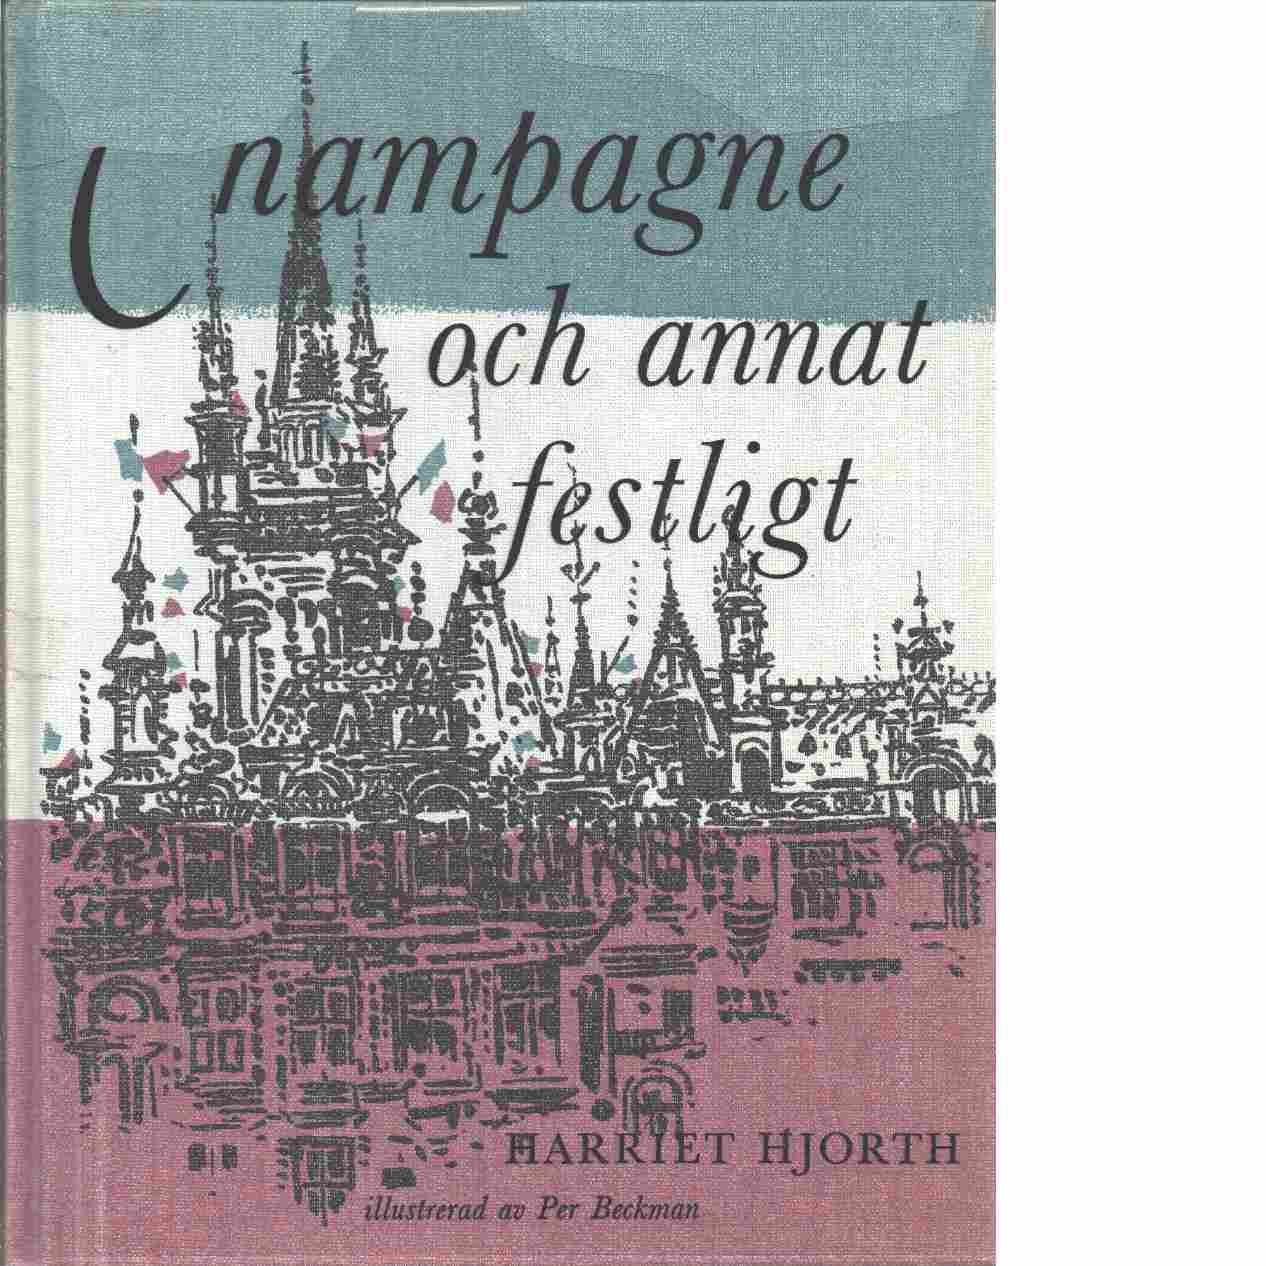 Champagne och annat festligt - Hjorth, Harriet